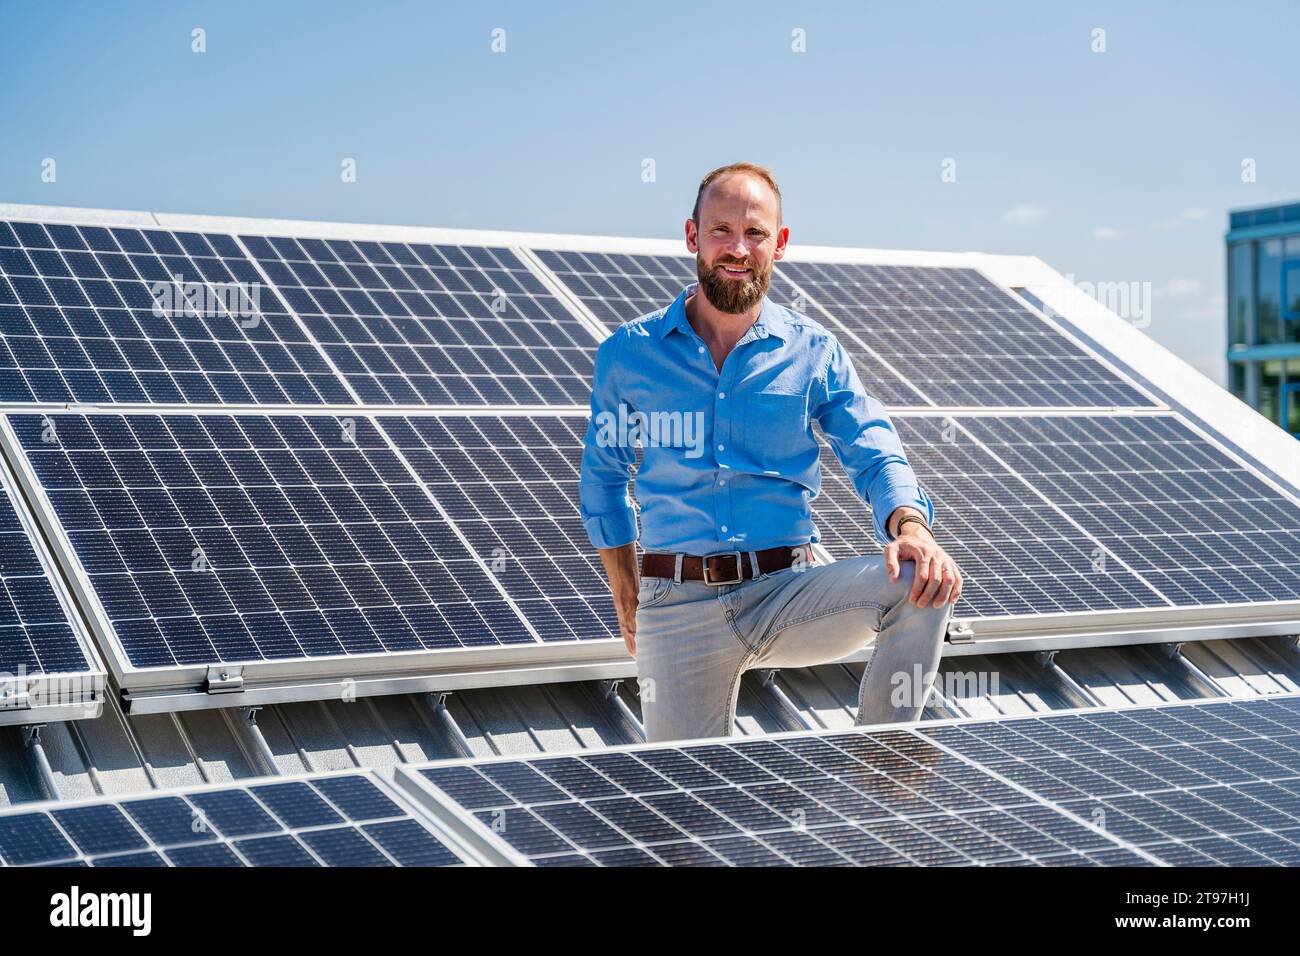 Un homme d'affaires joyeux se tient entouré de panneaux solaires, montrant son engagement en faveur de l'énergie durable Banque D'Images